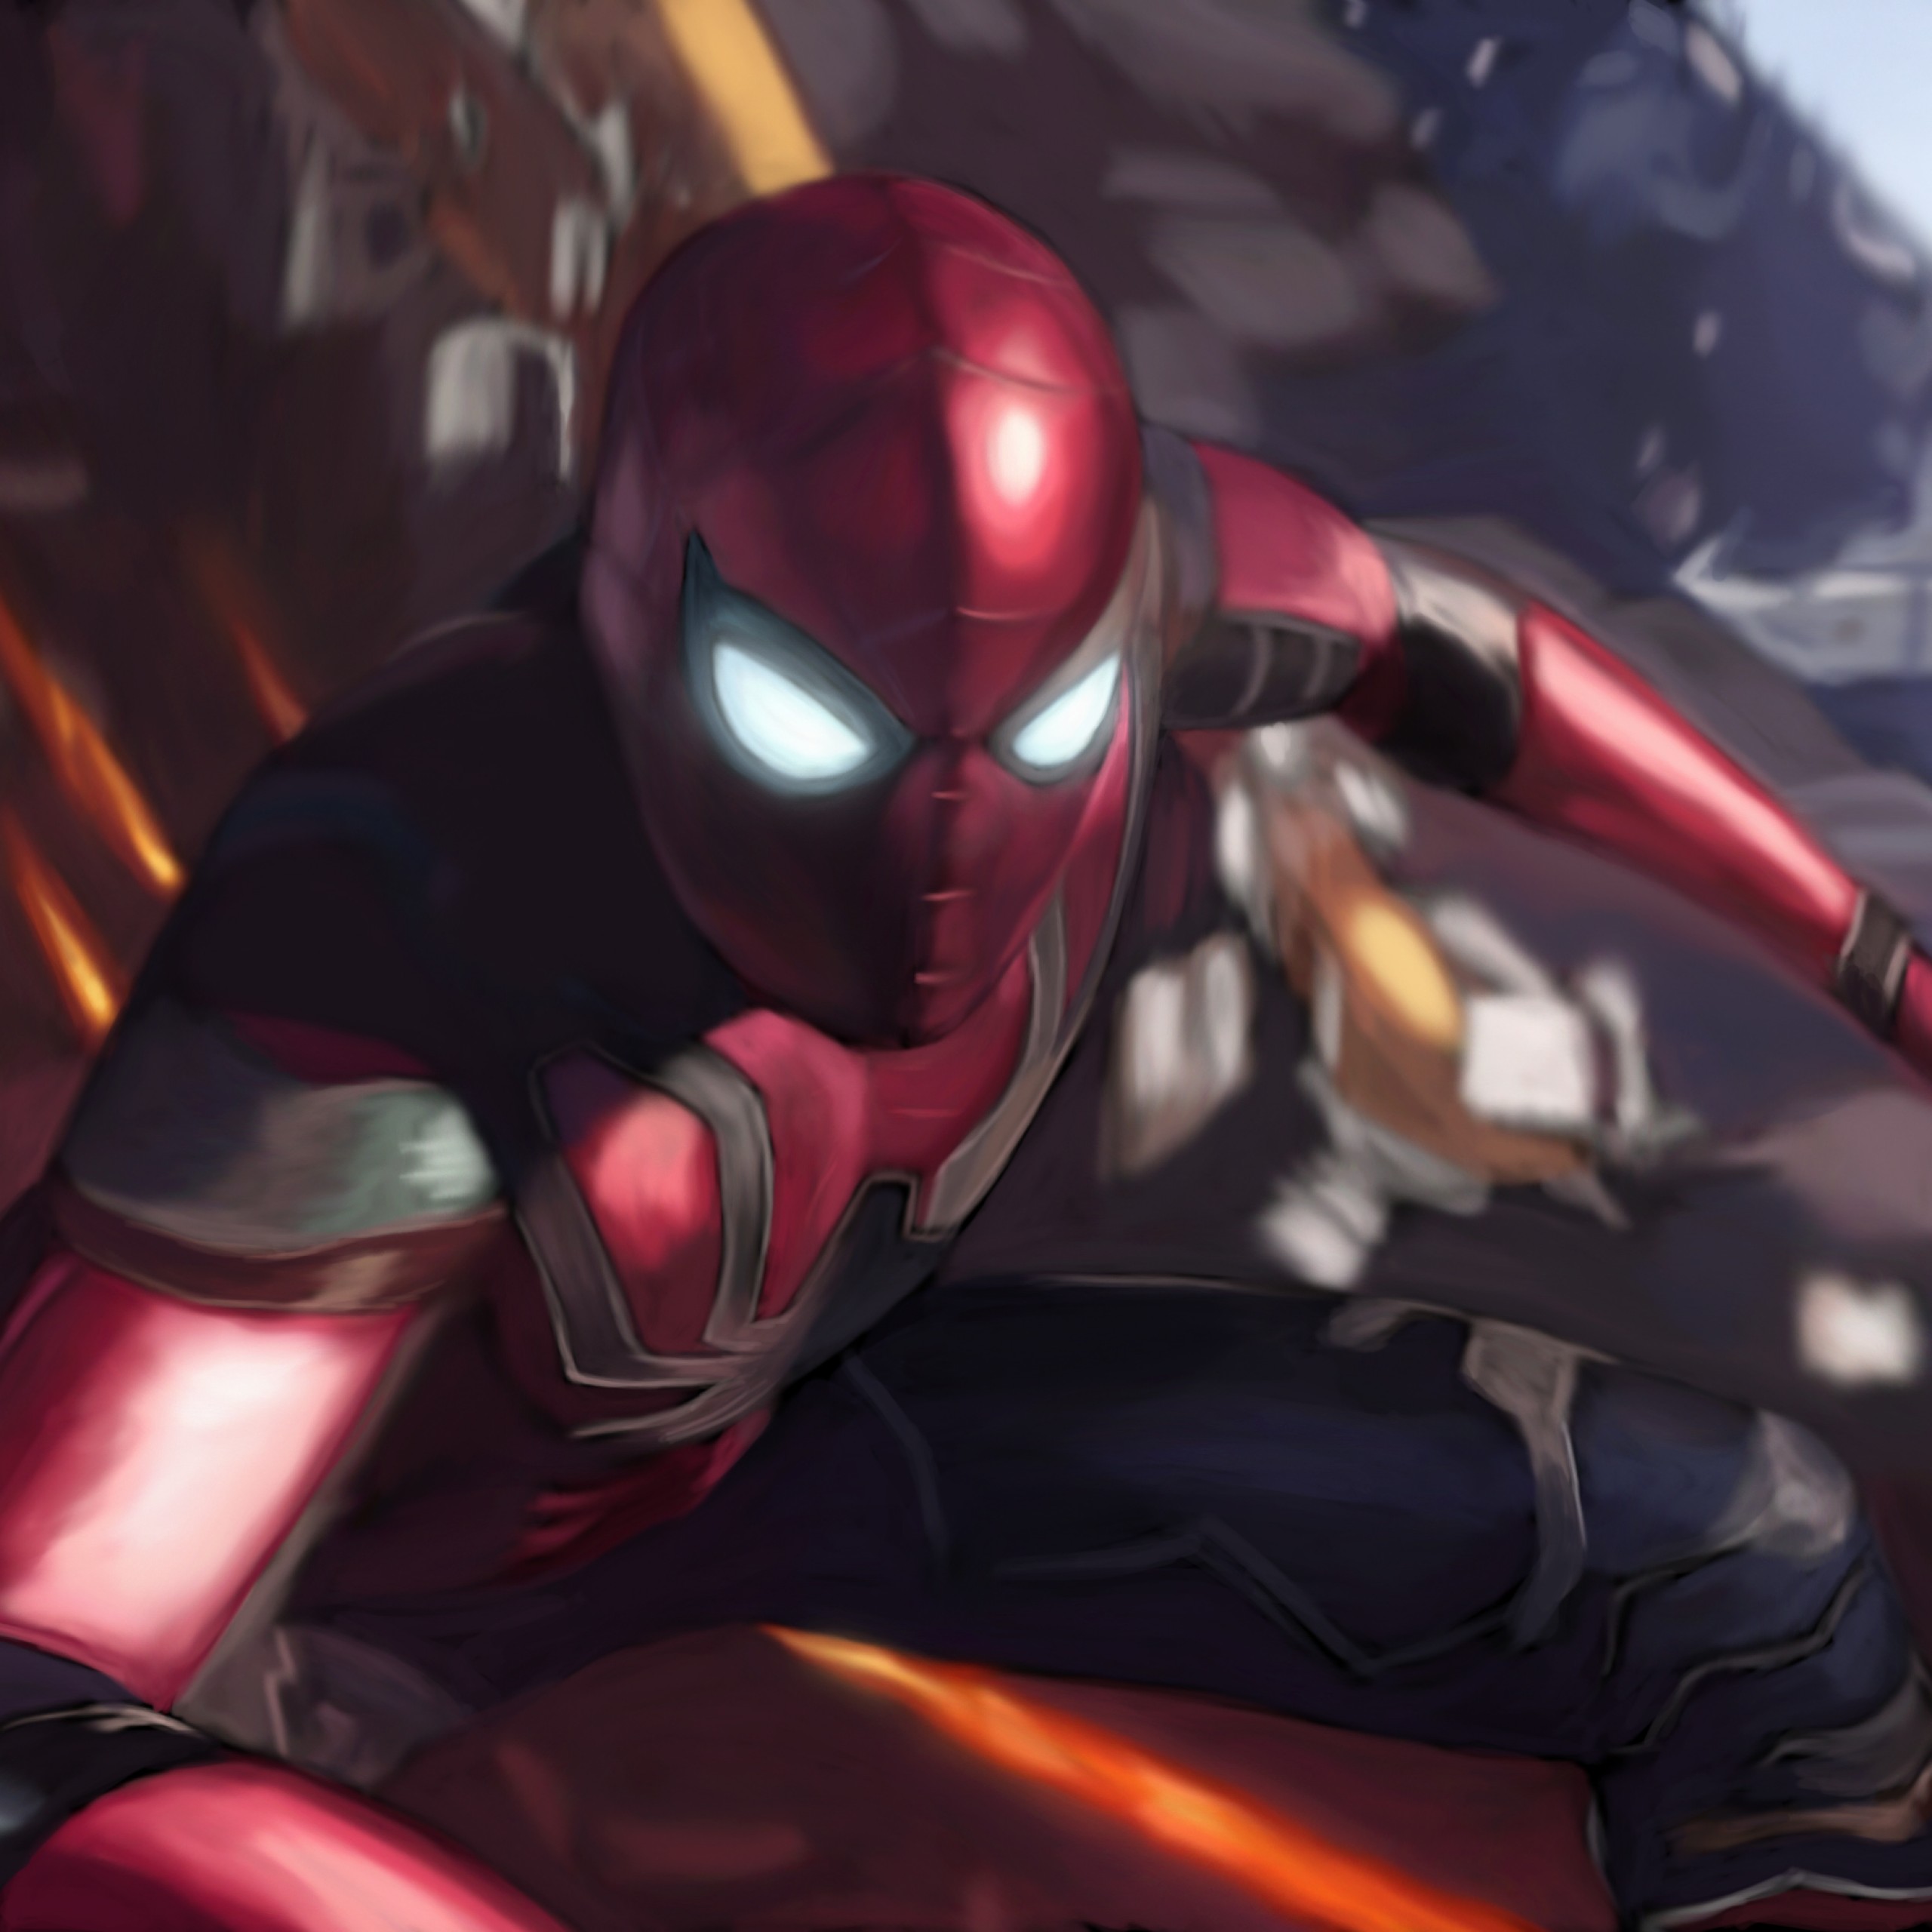 Spiderman Avenger Infinity War Wallpaper Iphone - HD Wallpaper 